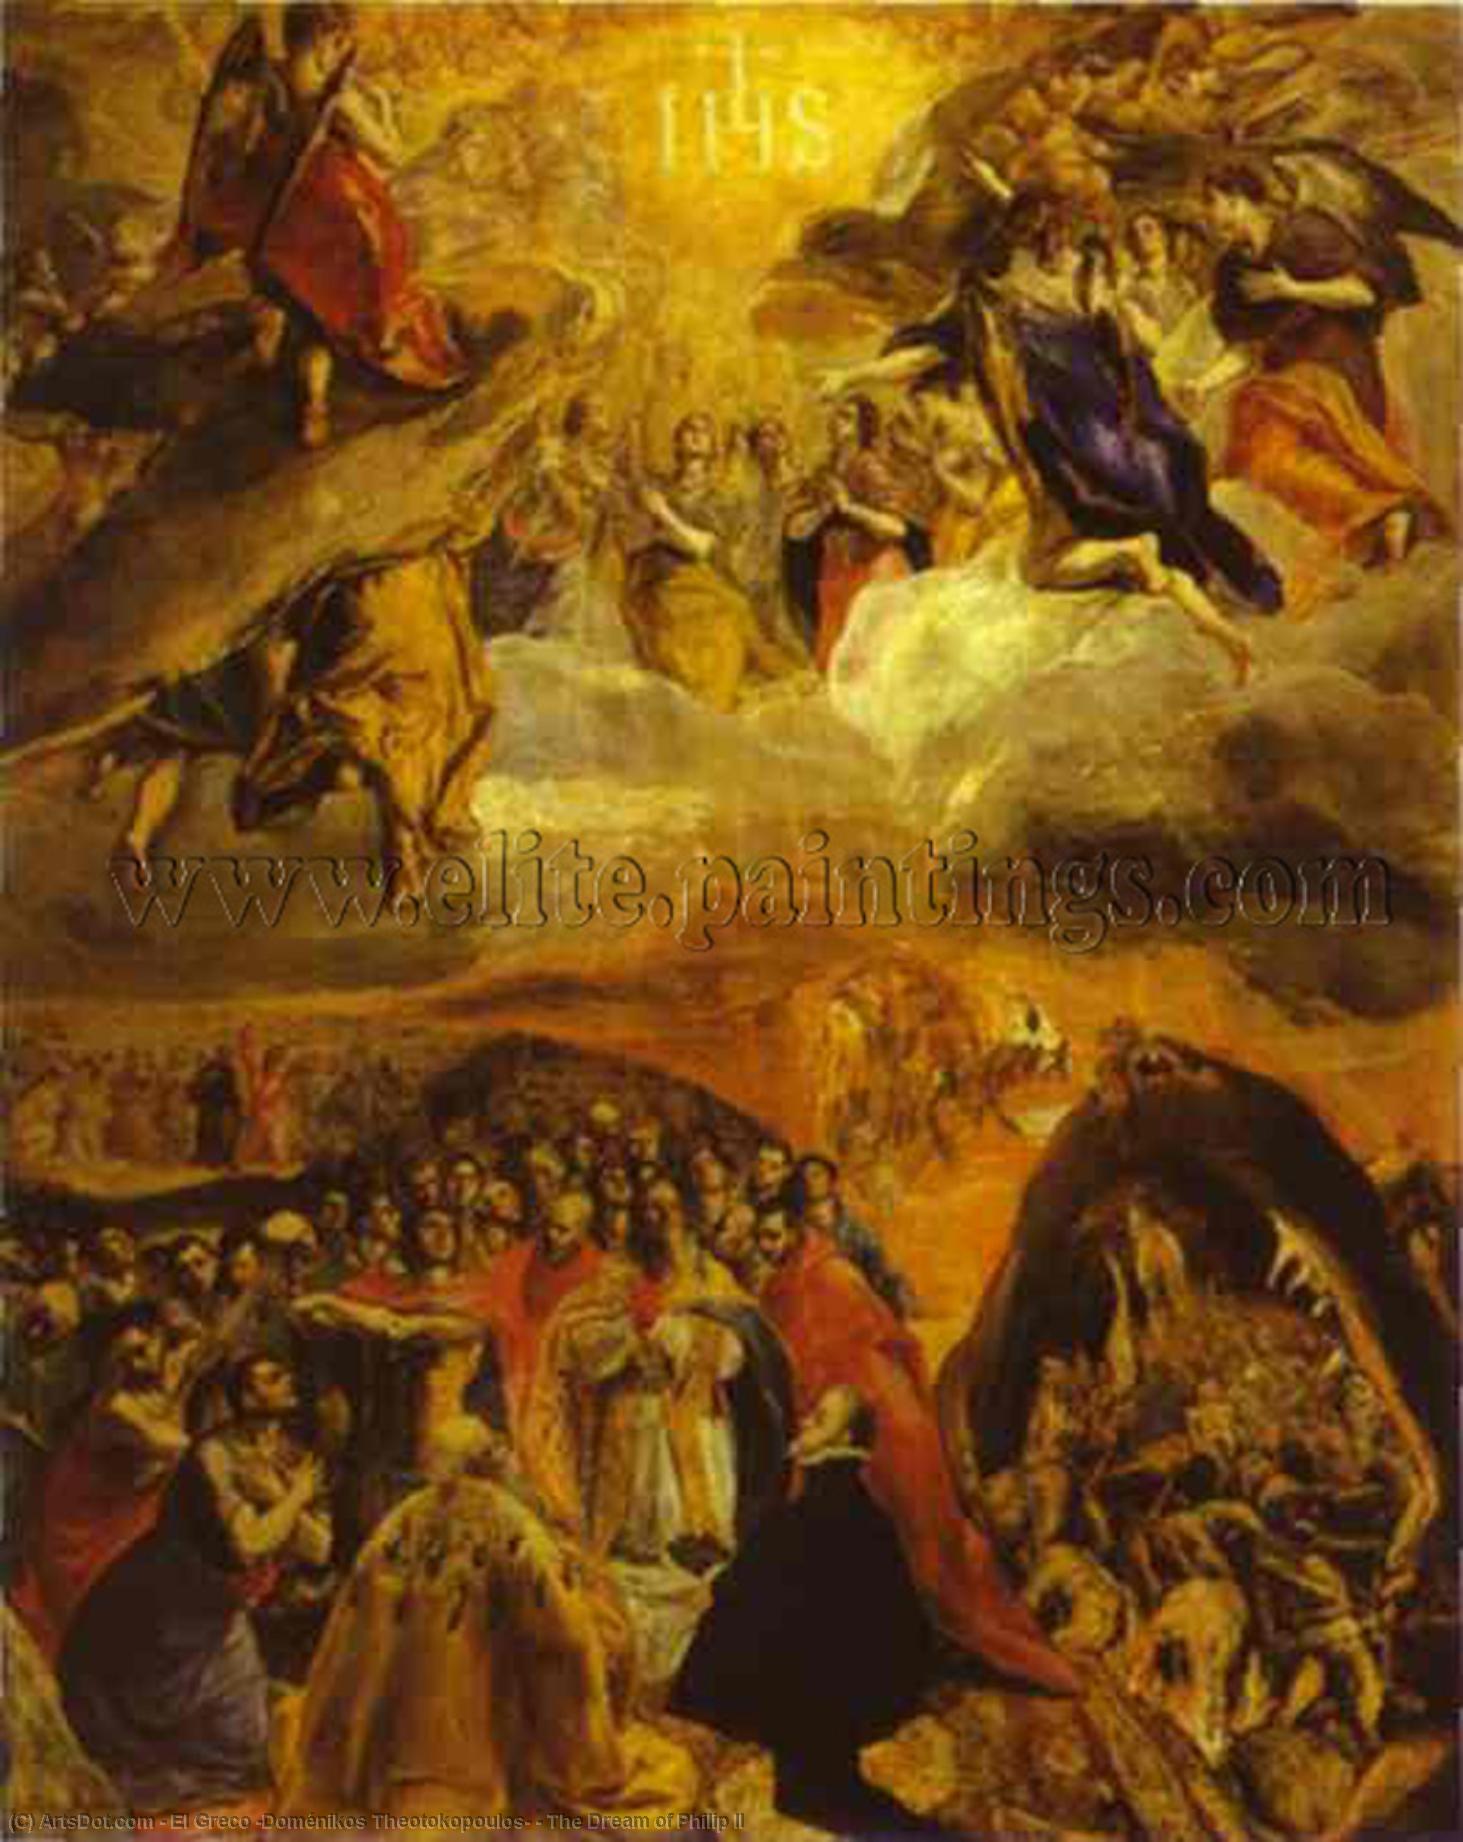 WikiOO.org - Encyclopedia of Fine Arts - Malba, Artwork El Greco (Doménikos Theotokopoulos) - The Dream of Philip II